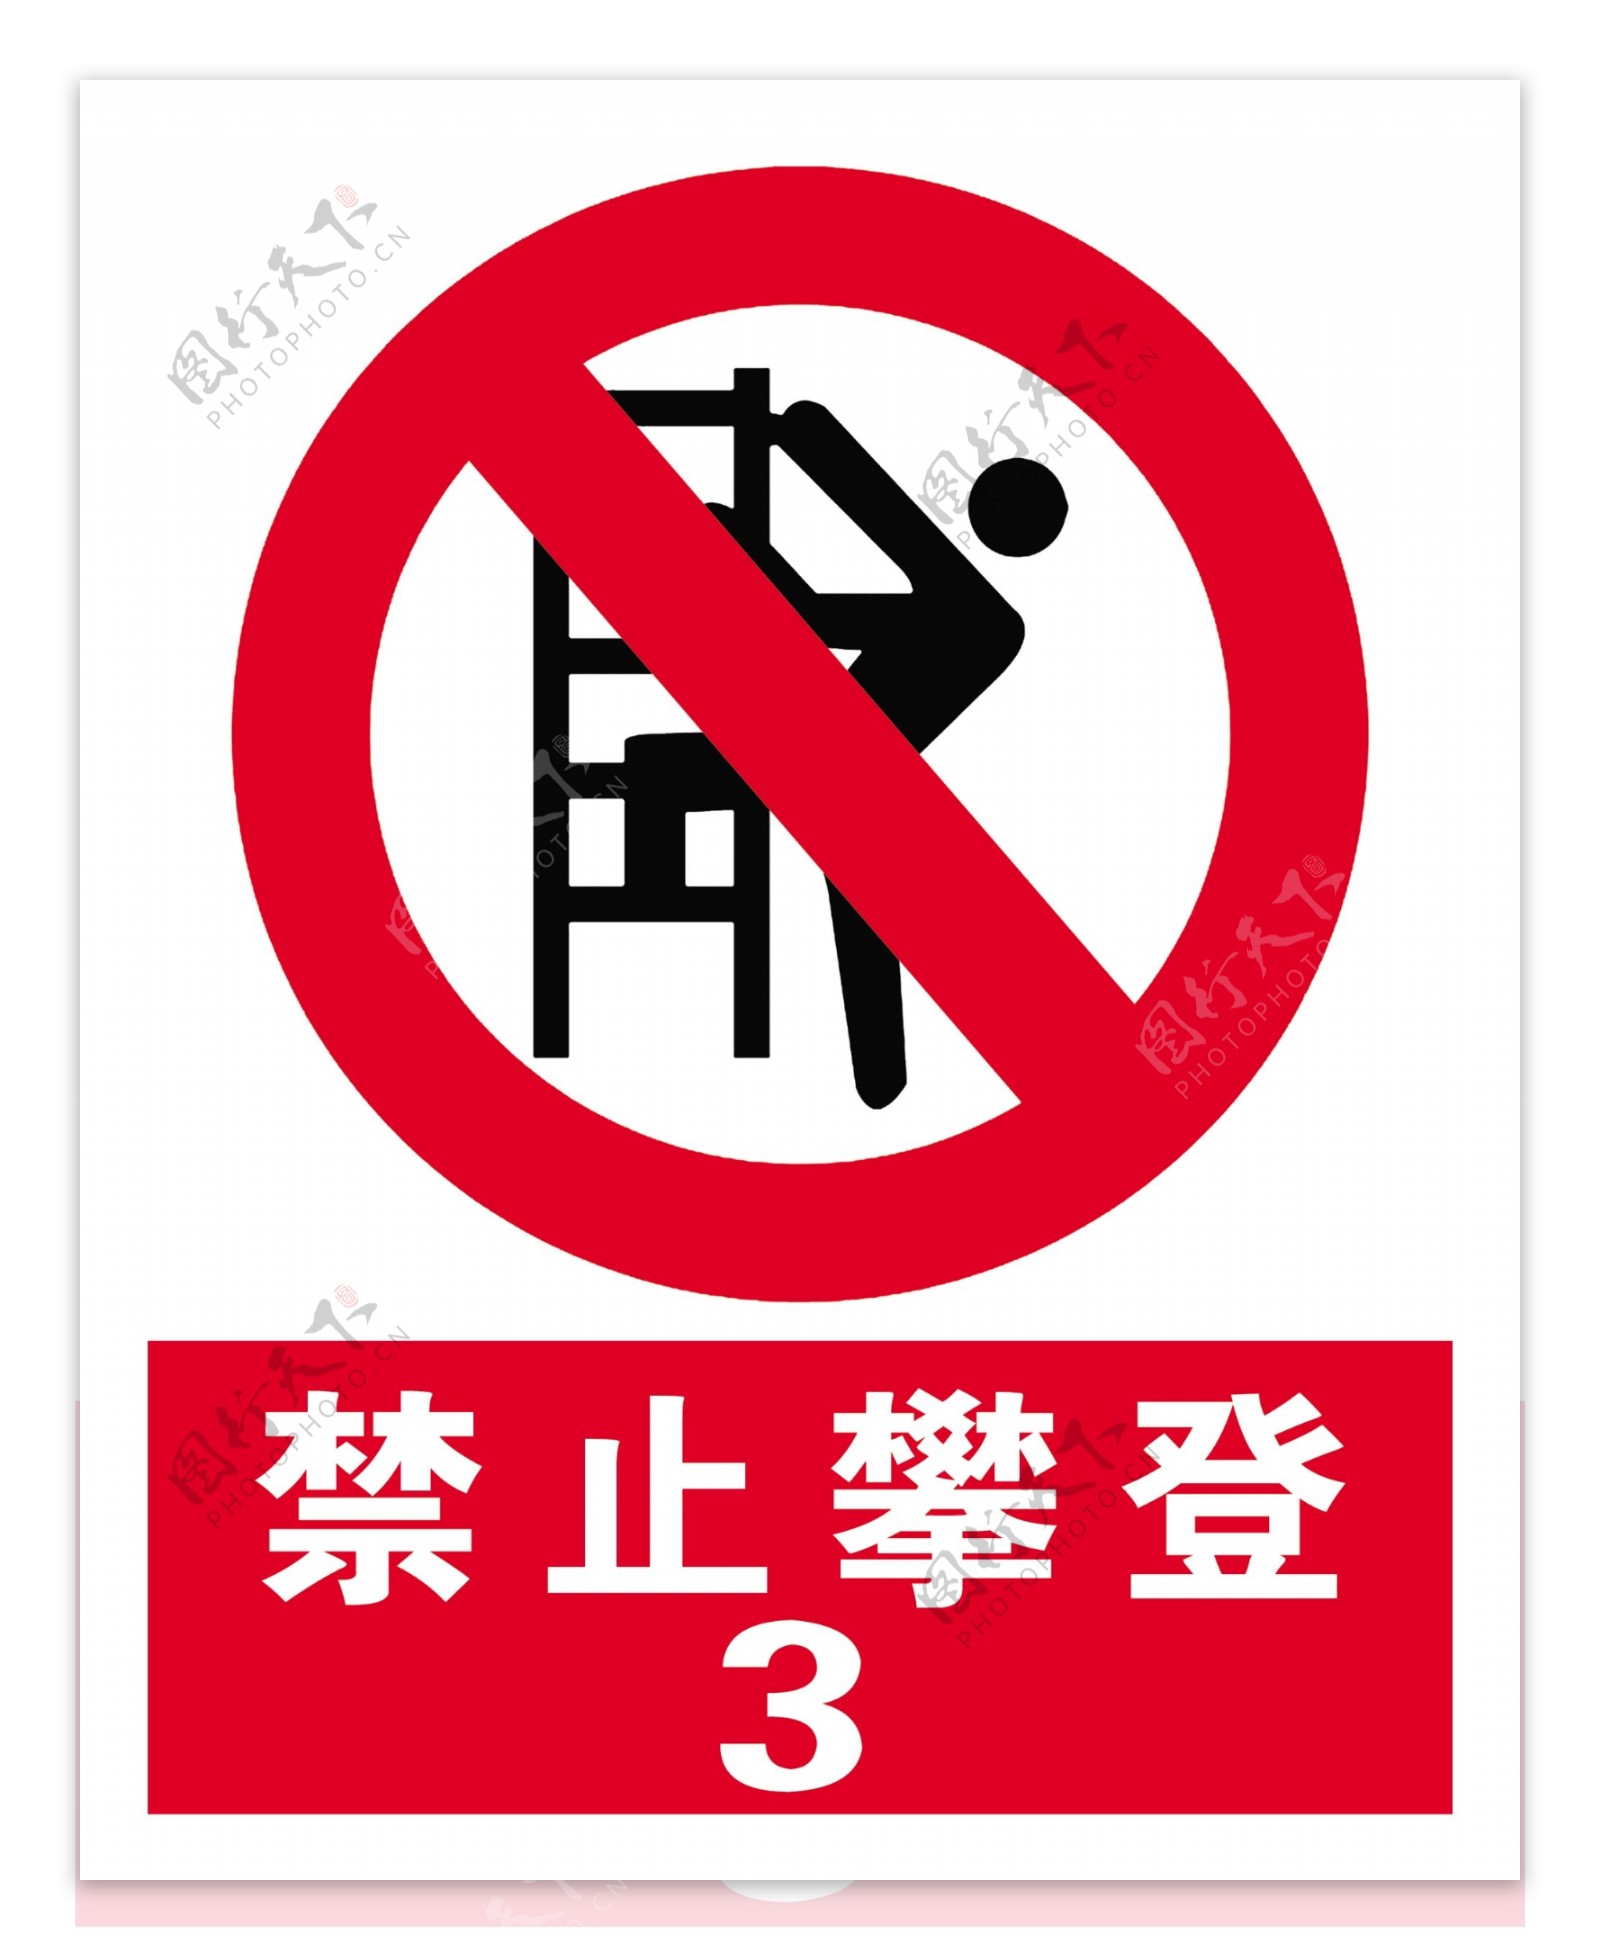 禁止攀登标志